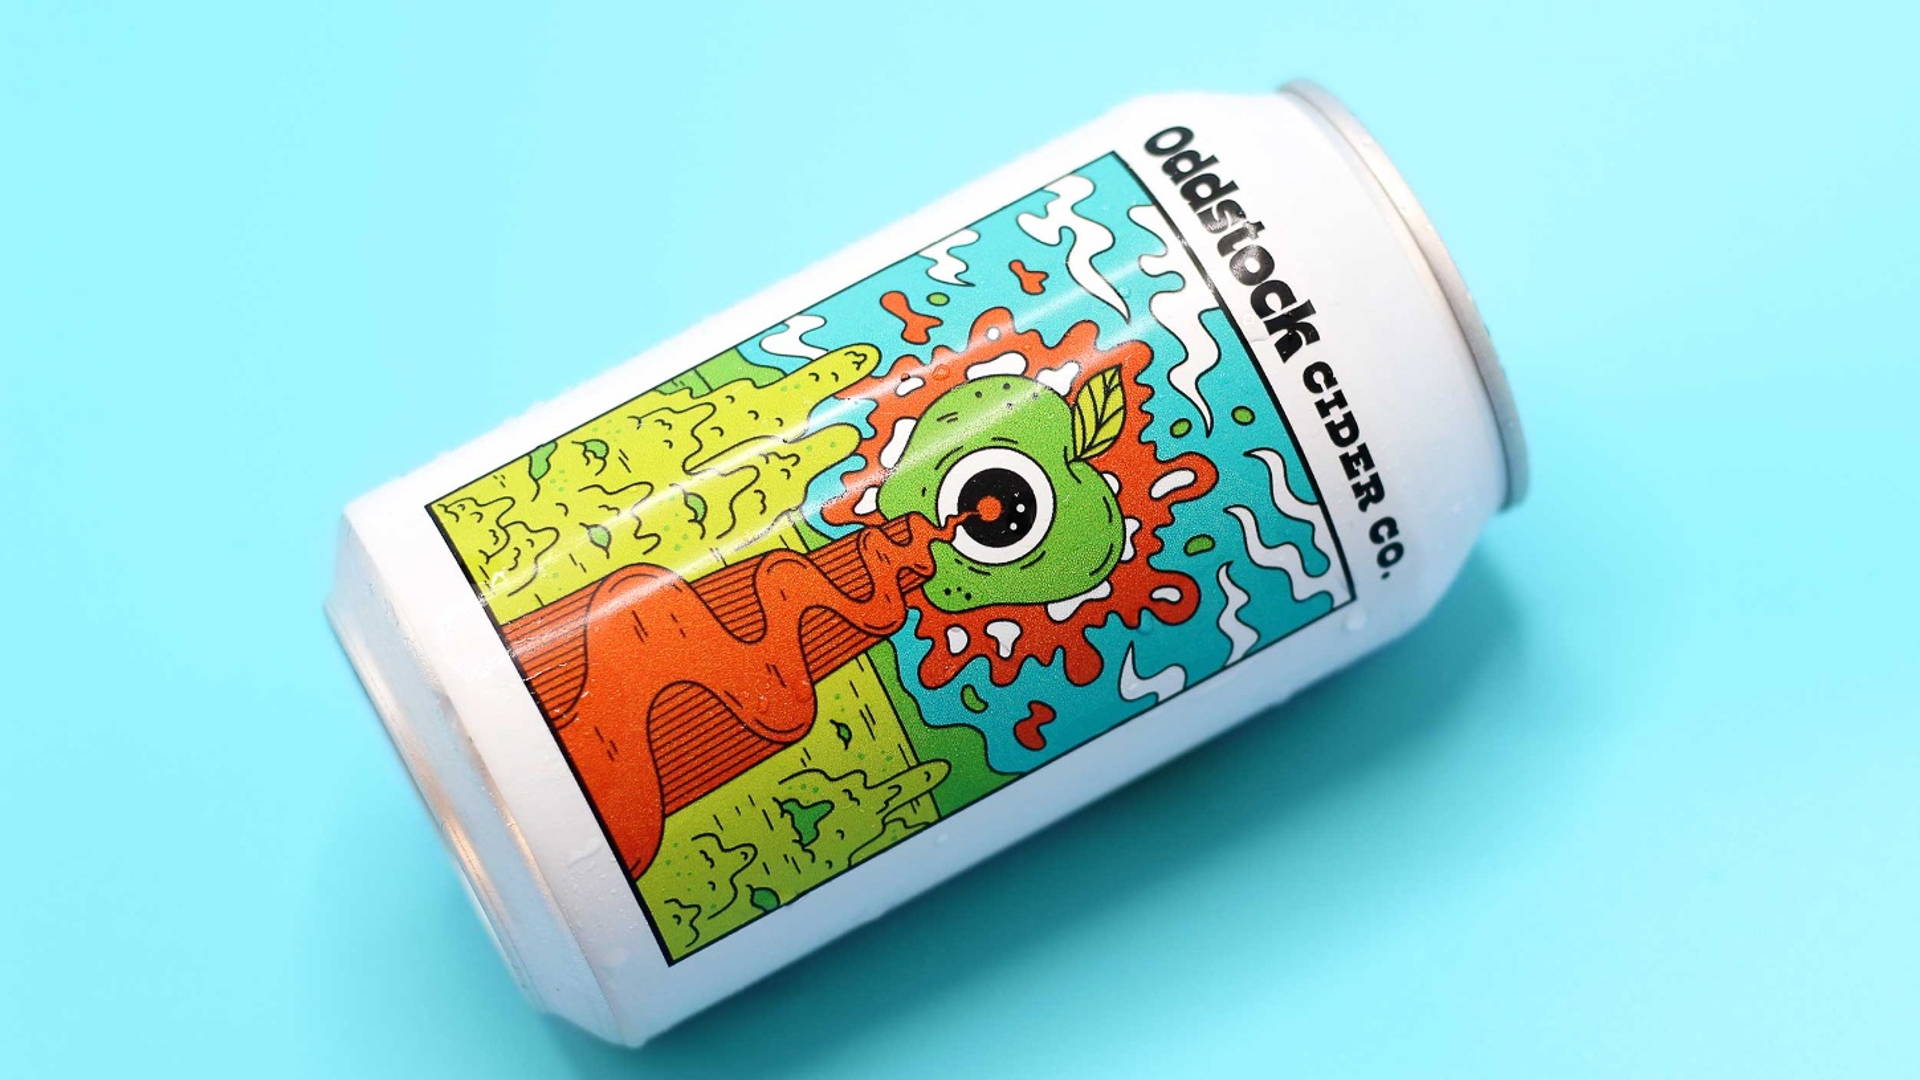 Featured image for Oddstock Cider's Playful Packaging by Blindtiger Design